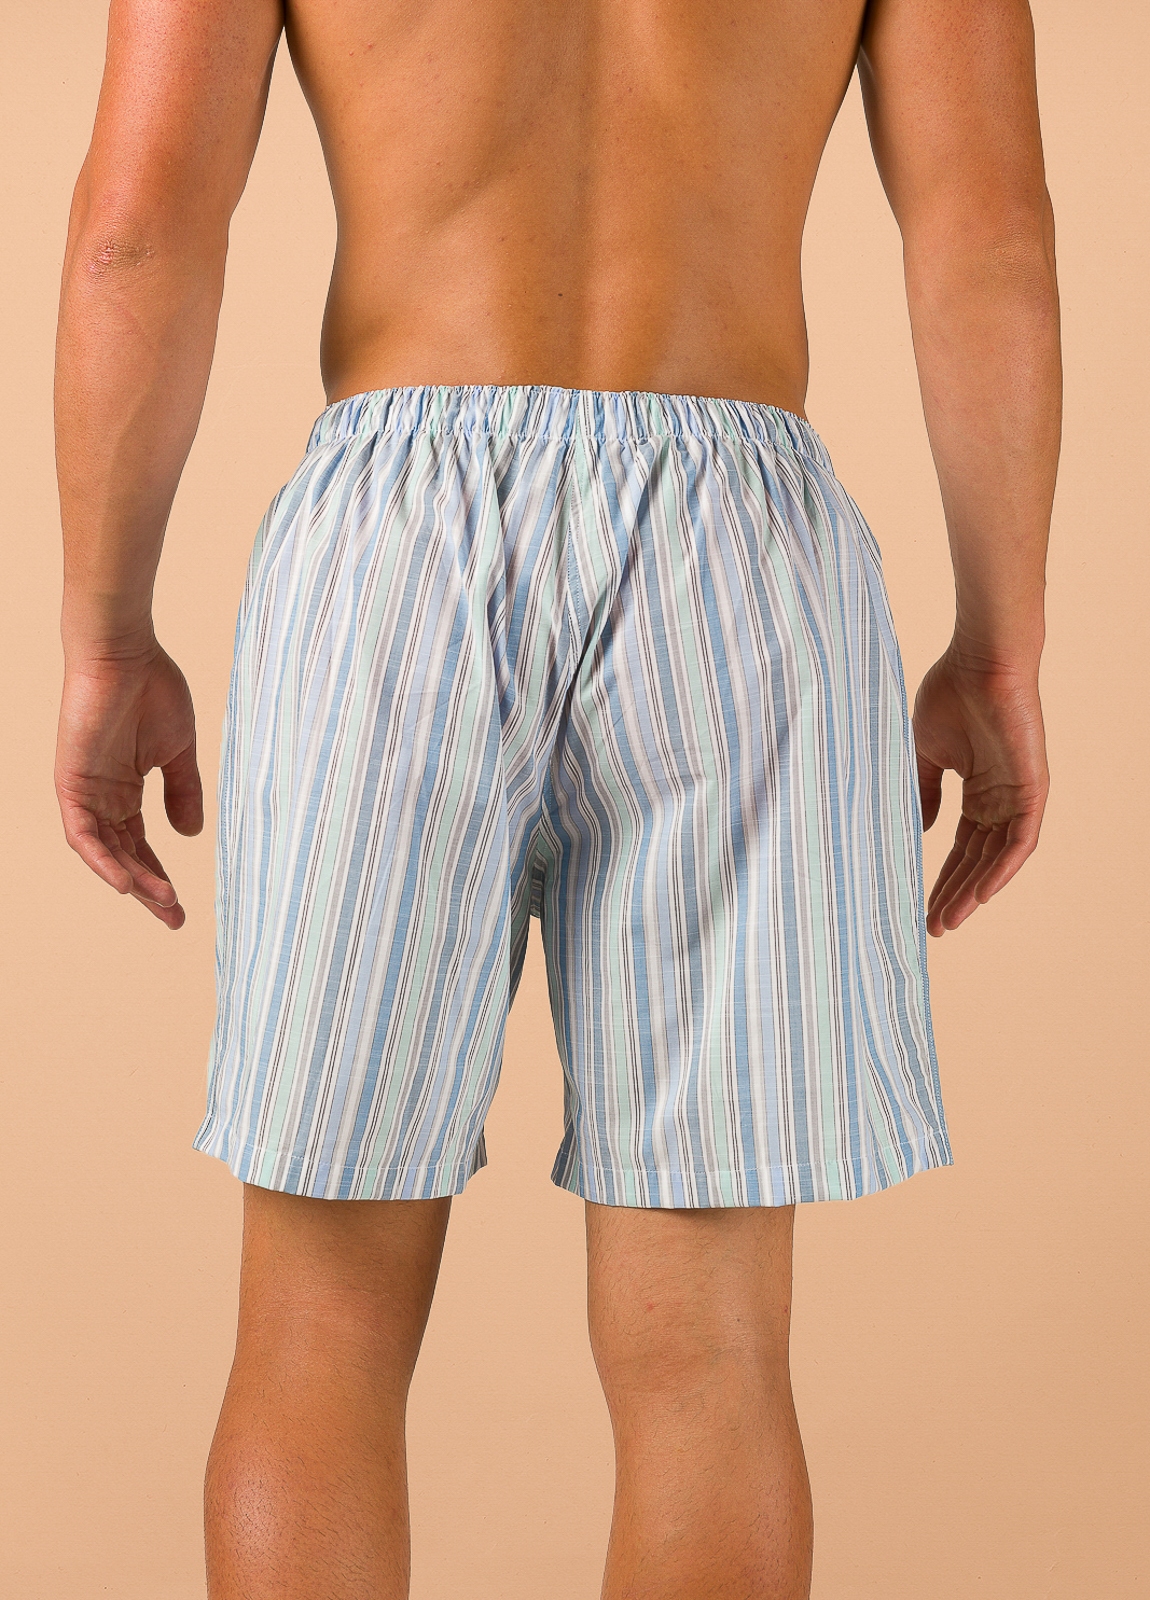 Pantalón corto de Pijama FUREST COLECCIÓN rayas azul y verde con funda incluida - Ítem1